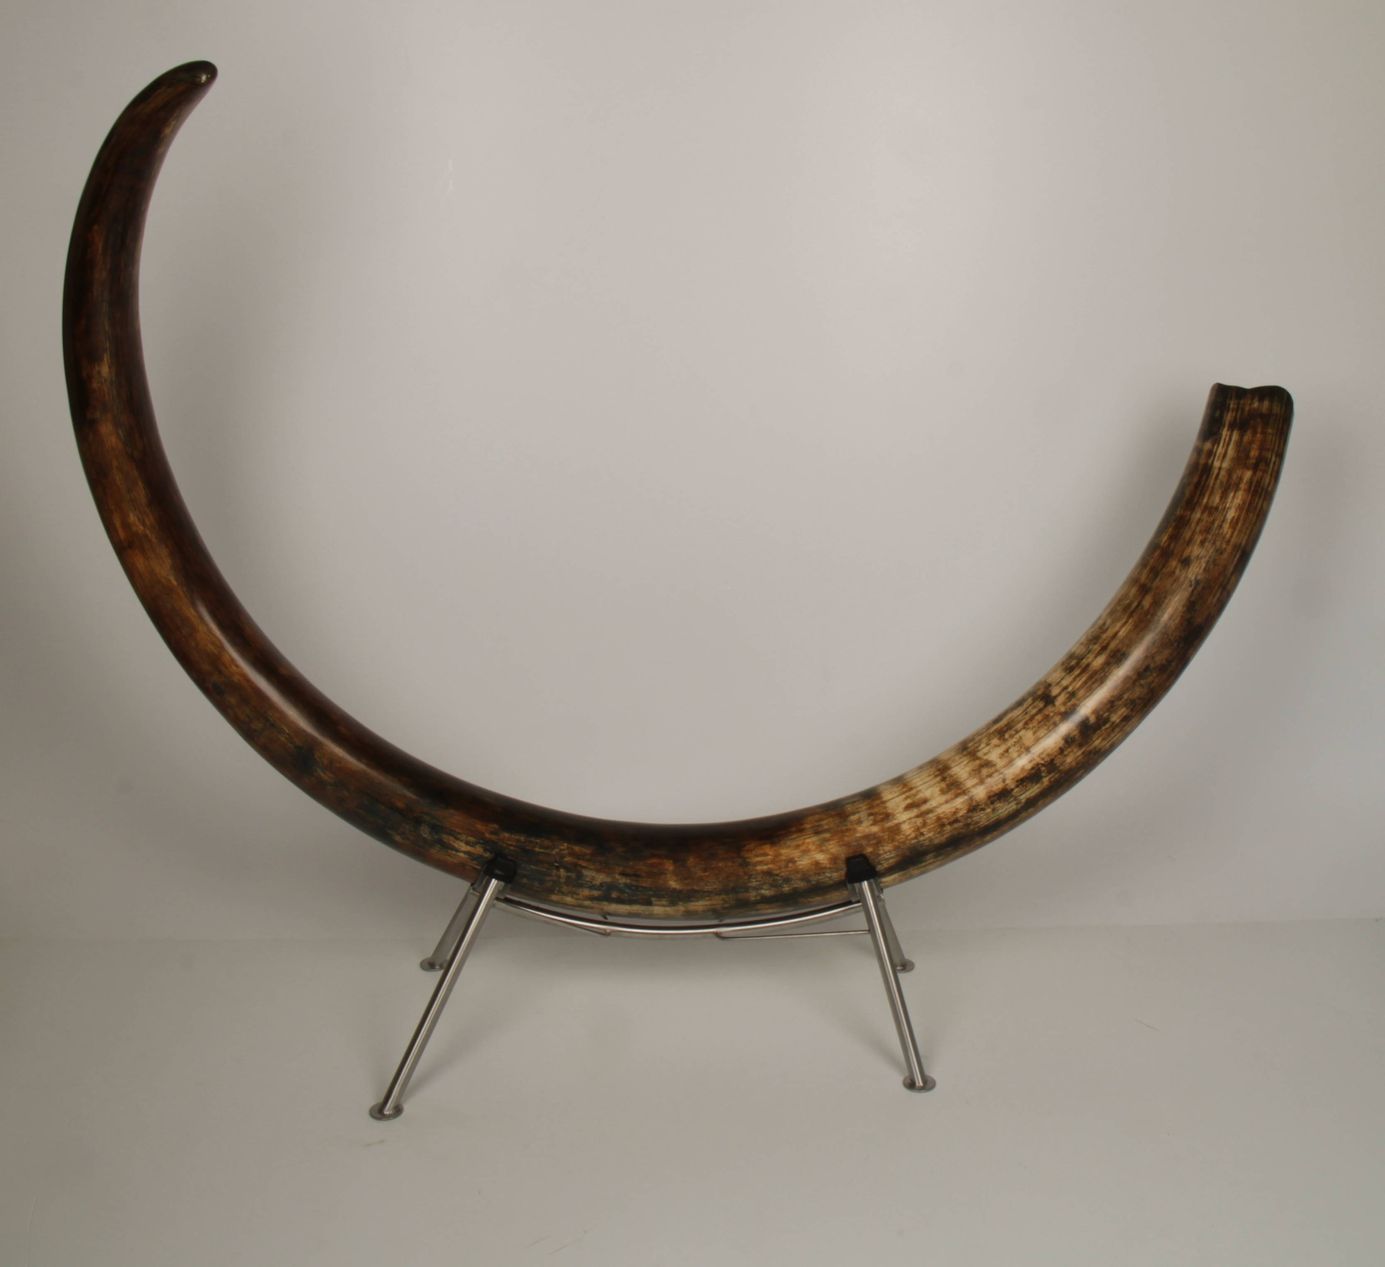 Natural woolly mammoth tusk